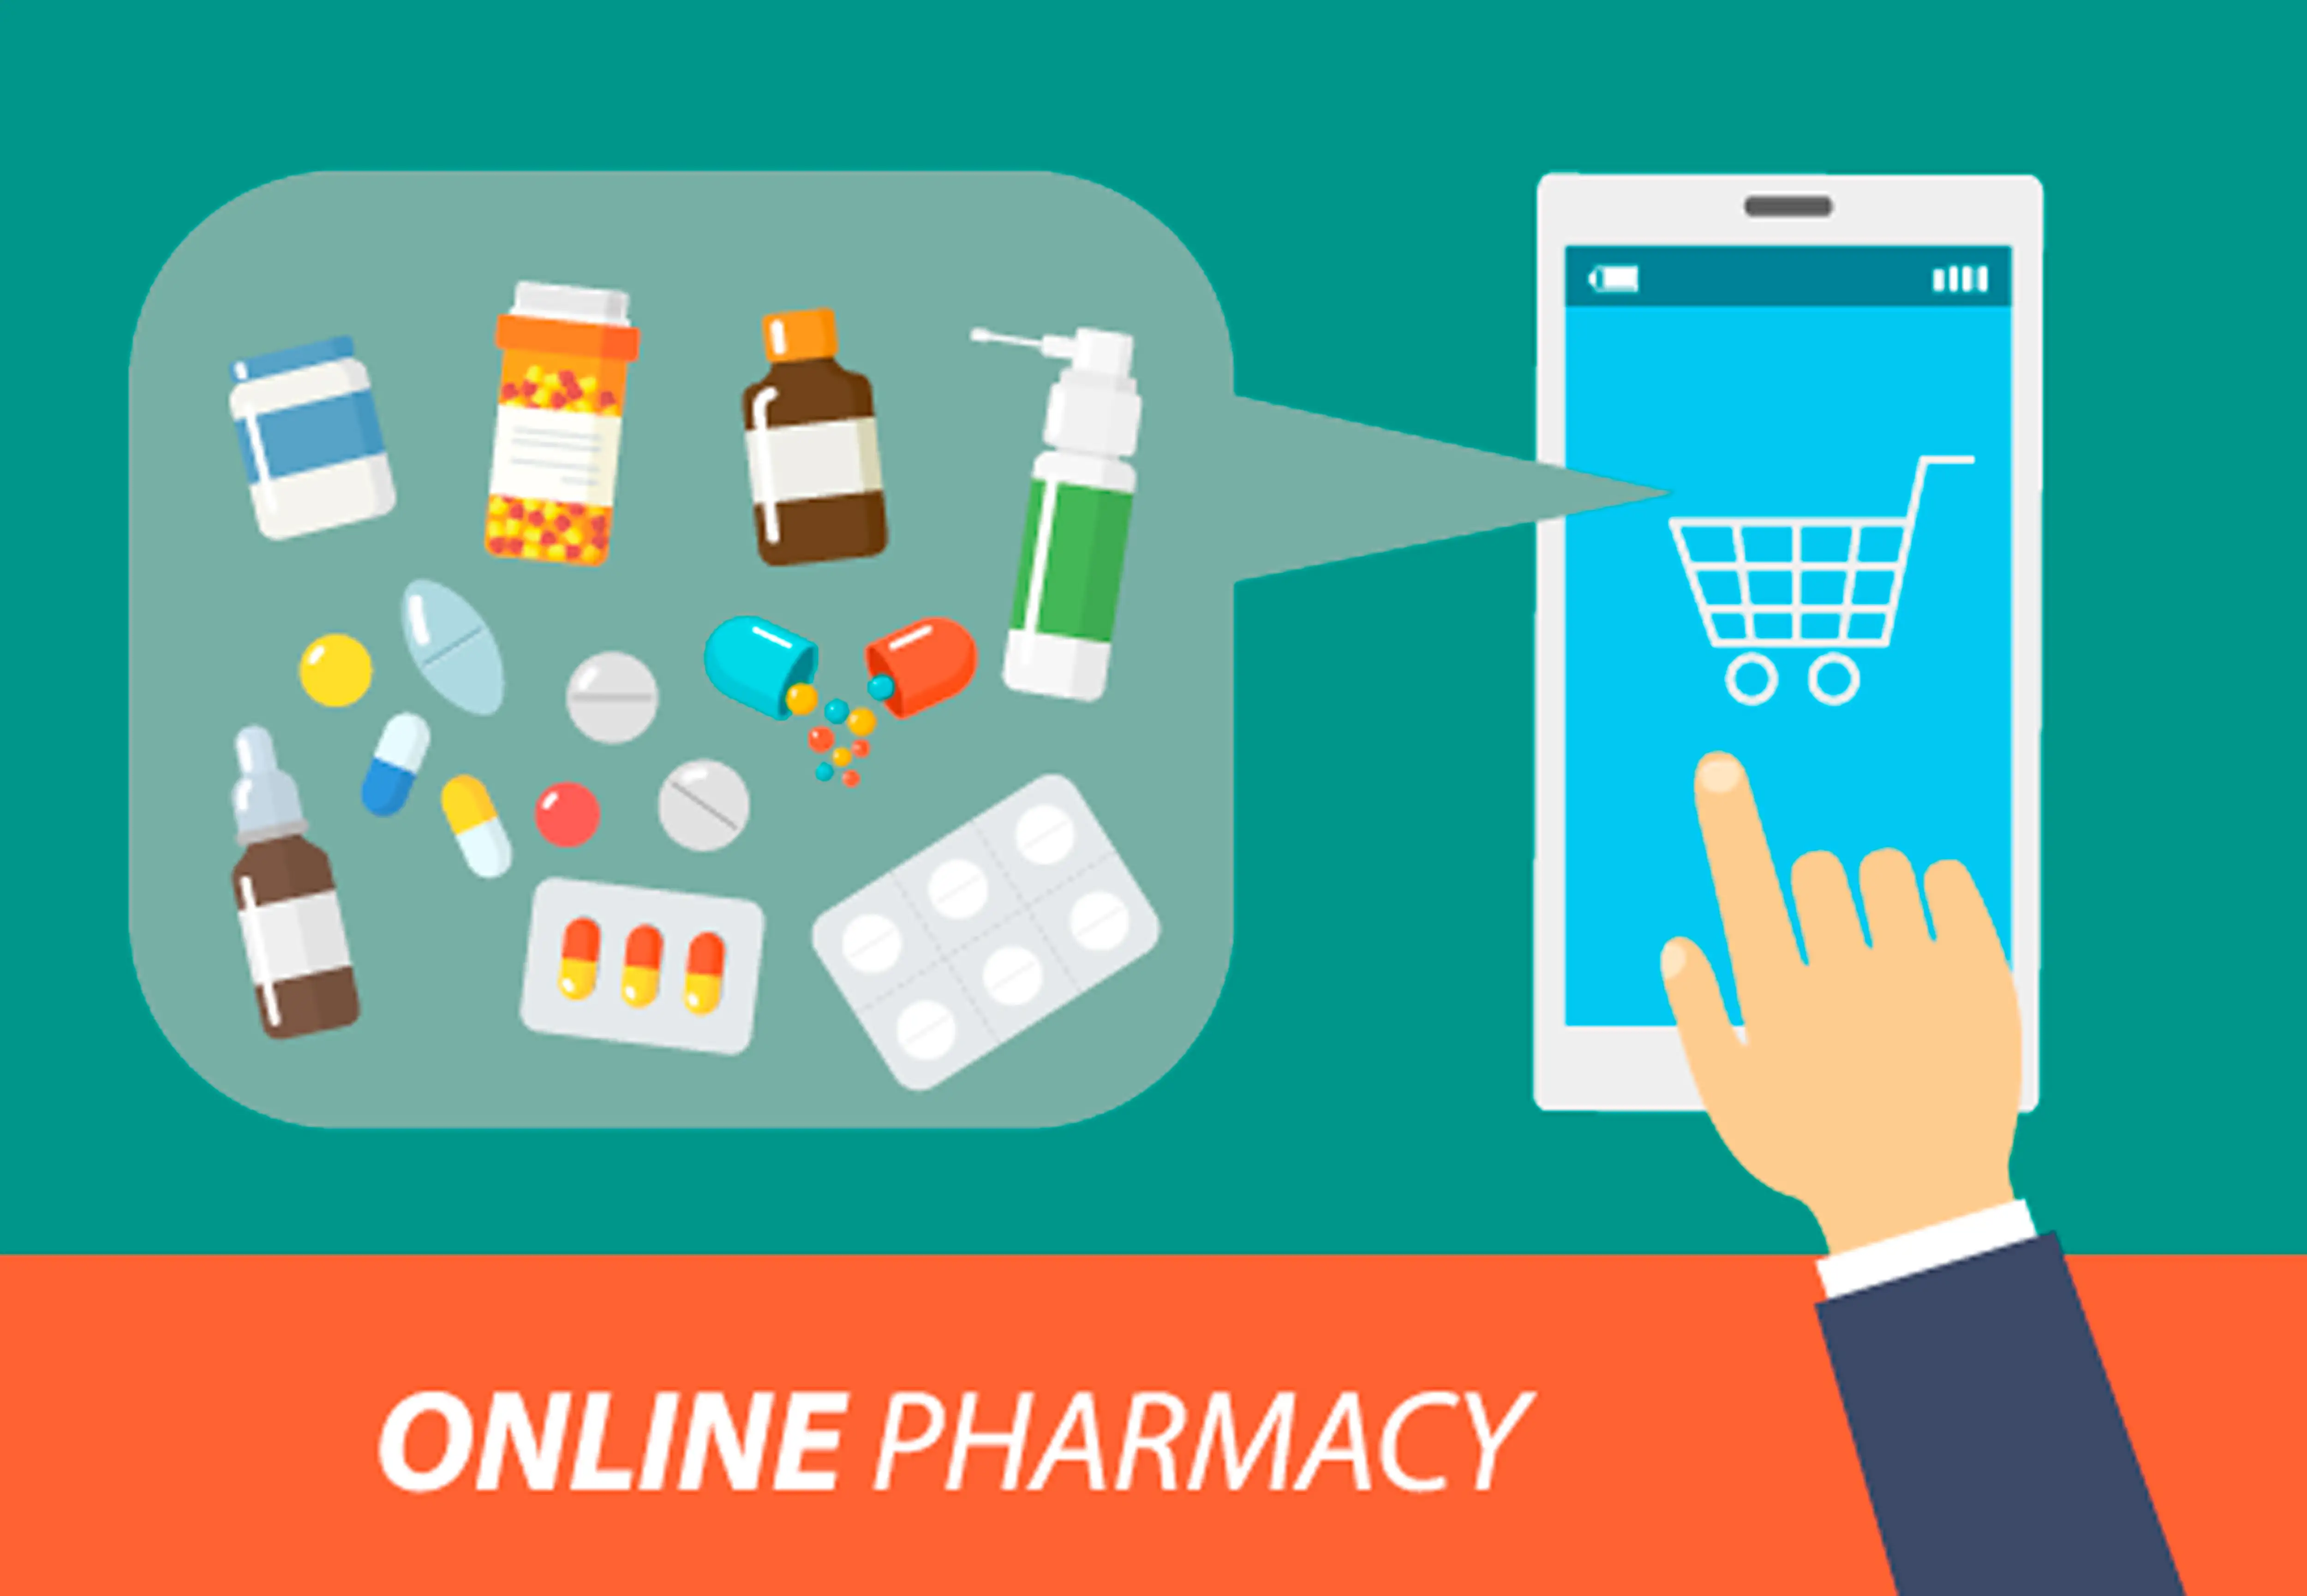 Телефон купить таблетки. Интернет аптека. Интернет торговля лекарствами. Реклама лекарств в интернете.